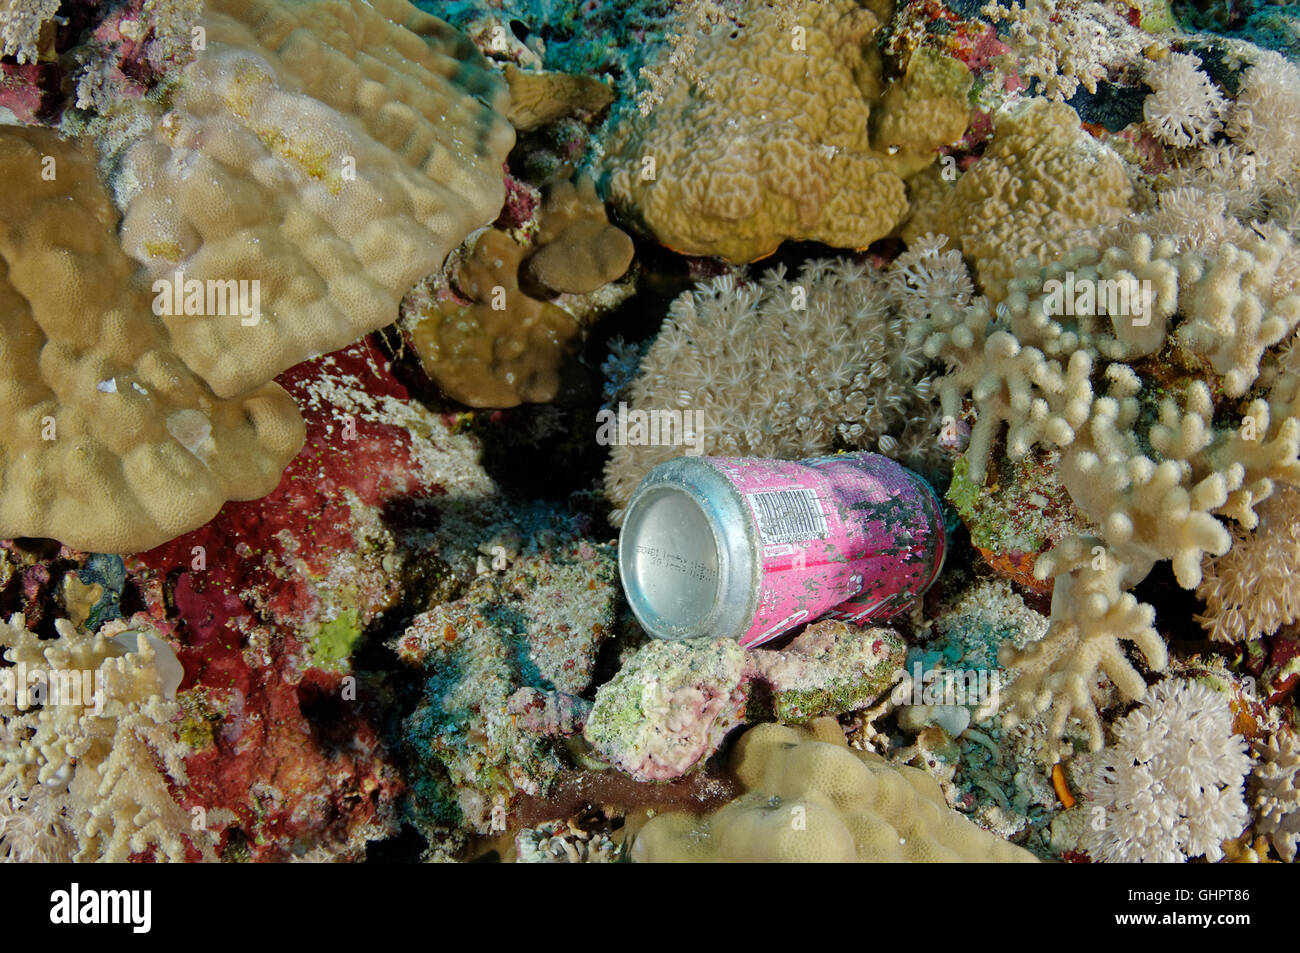 La pollution de l'environnement, les déchets en mer Rouge, Red Sea, Egypt, Africa Banque D'Images